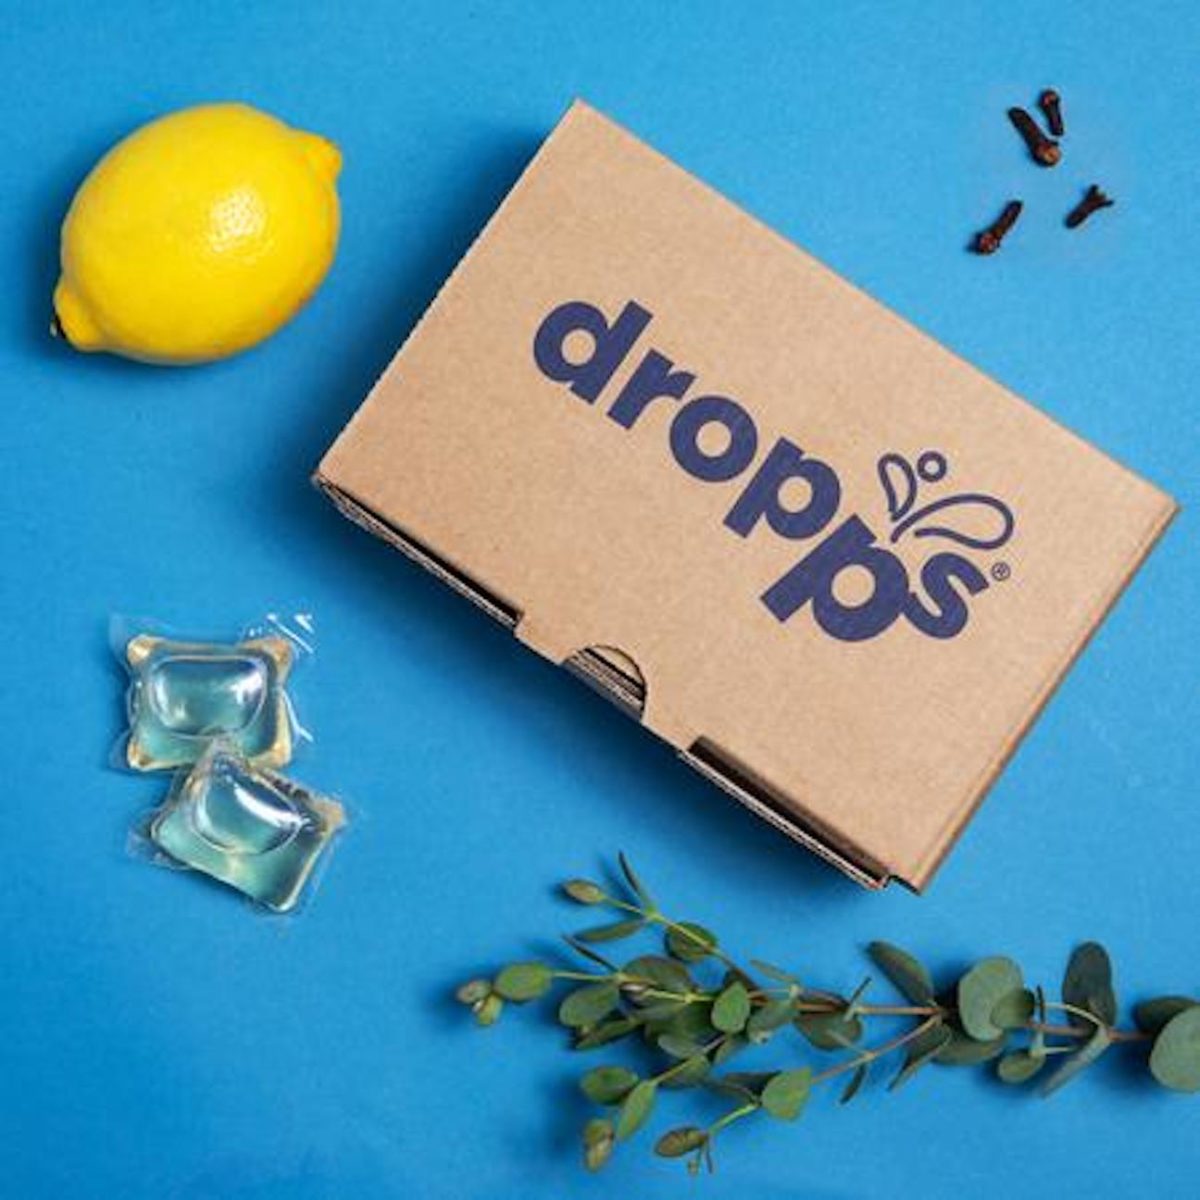 A box that says Dropps next to a lemon